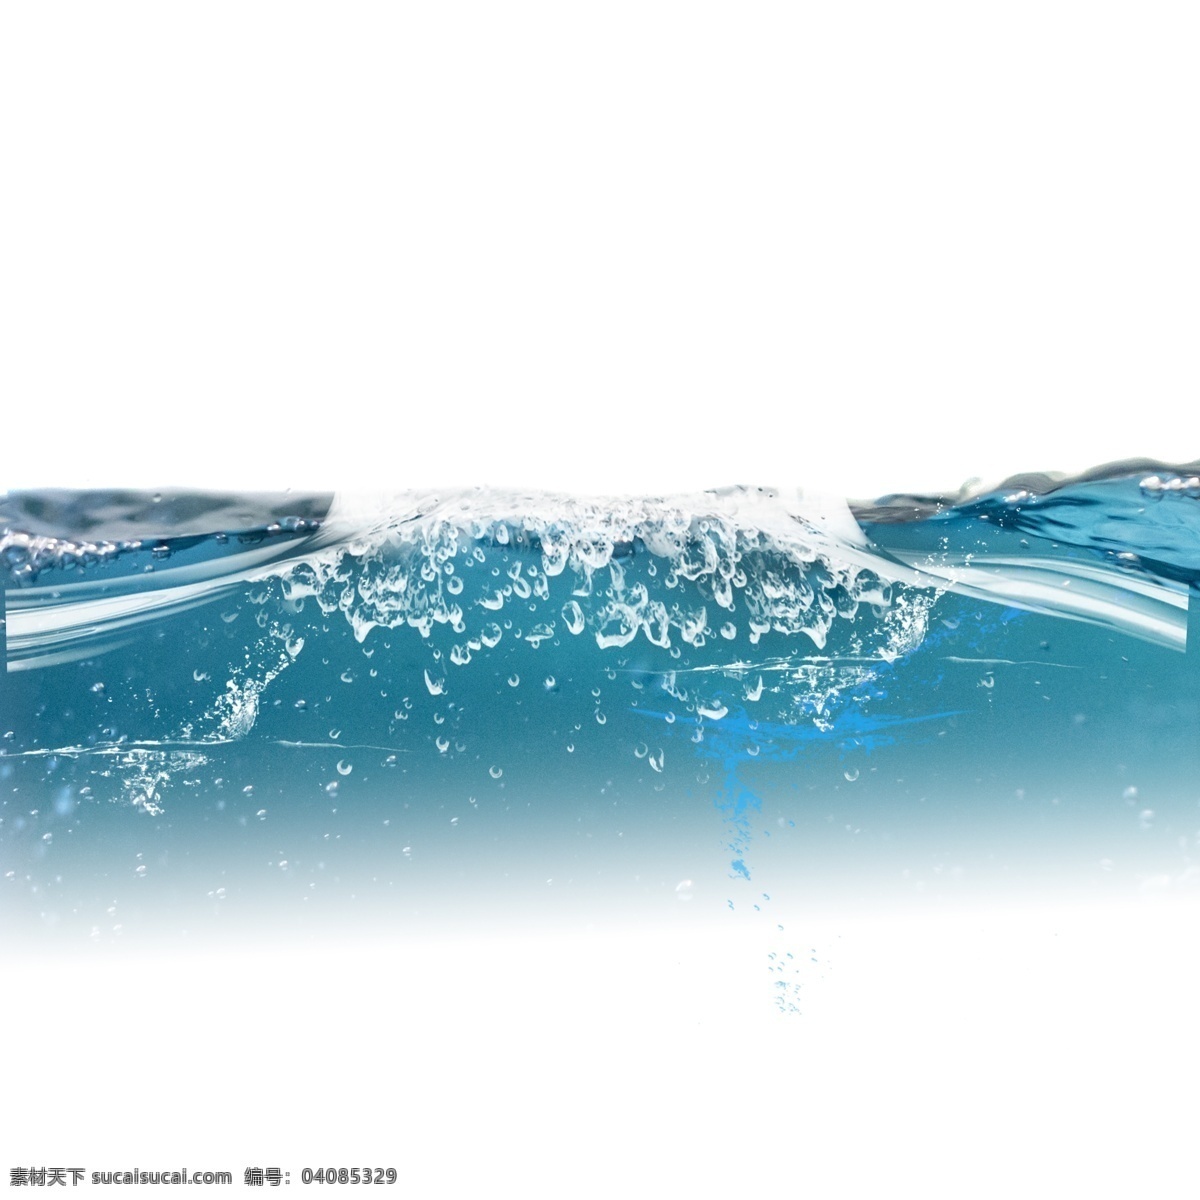 飞溅 水花 水滴 元素 喷溅 透明 动感 晶莹 蓝色水花 水珠